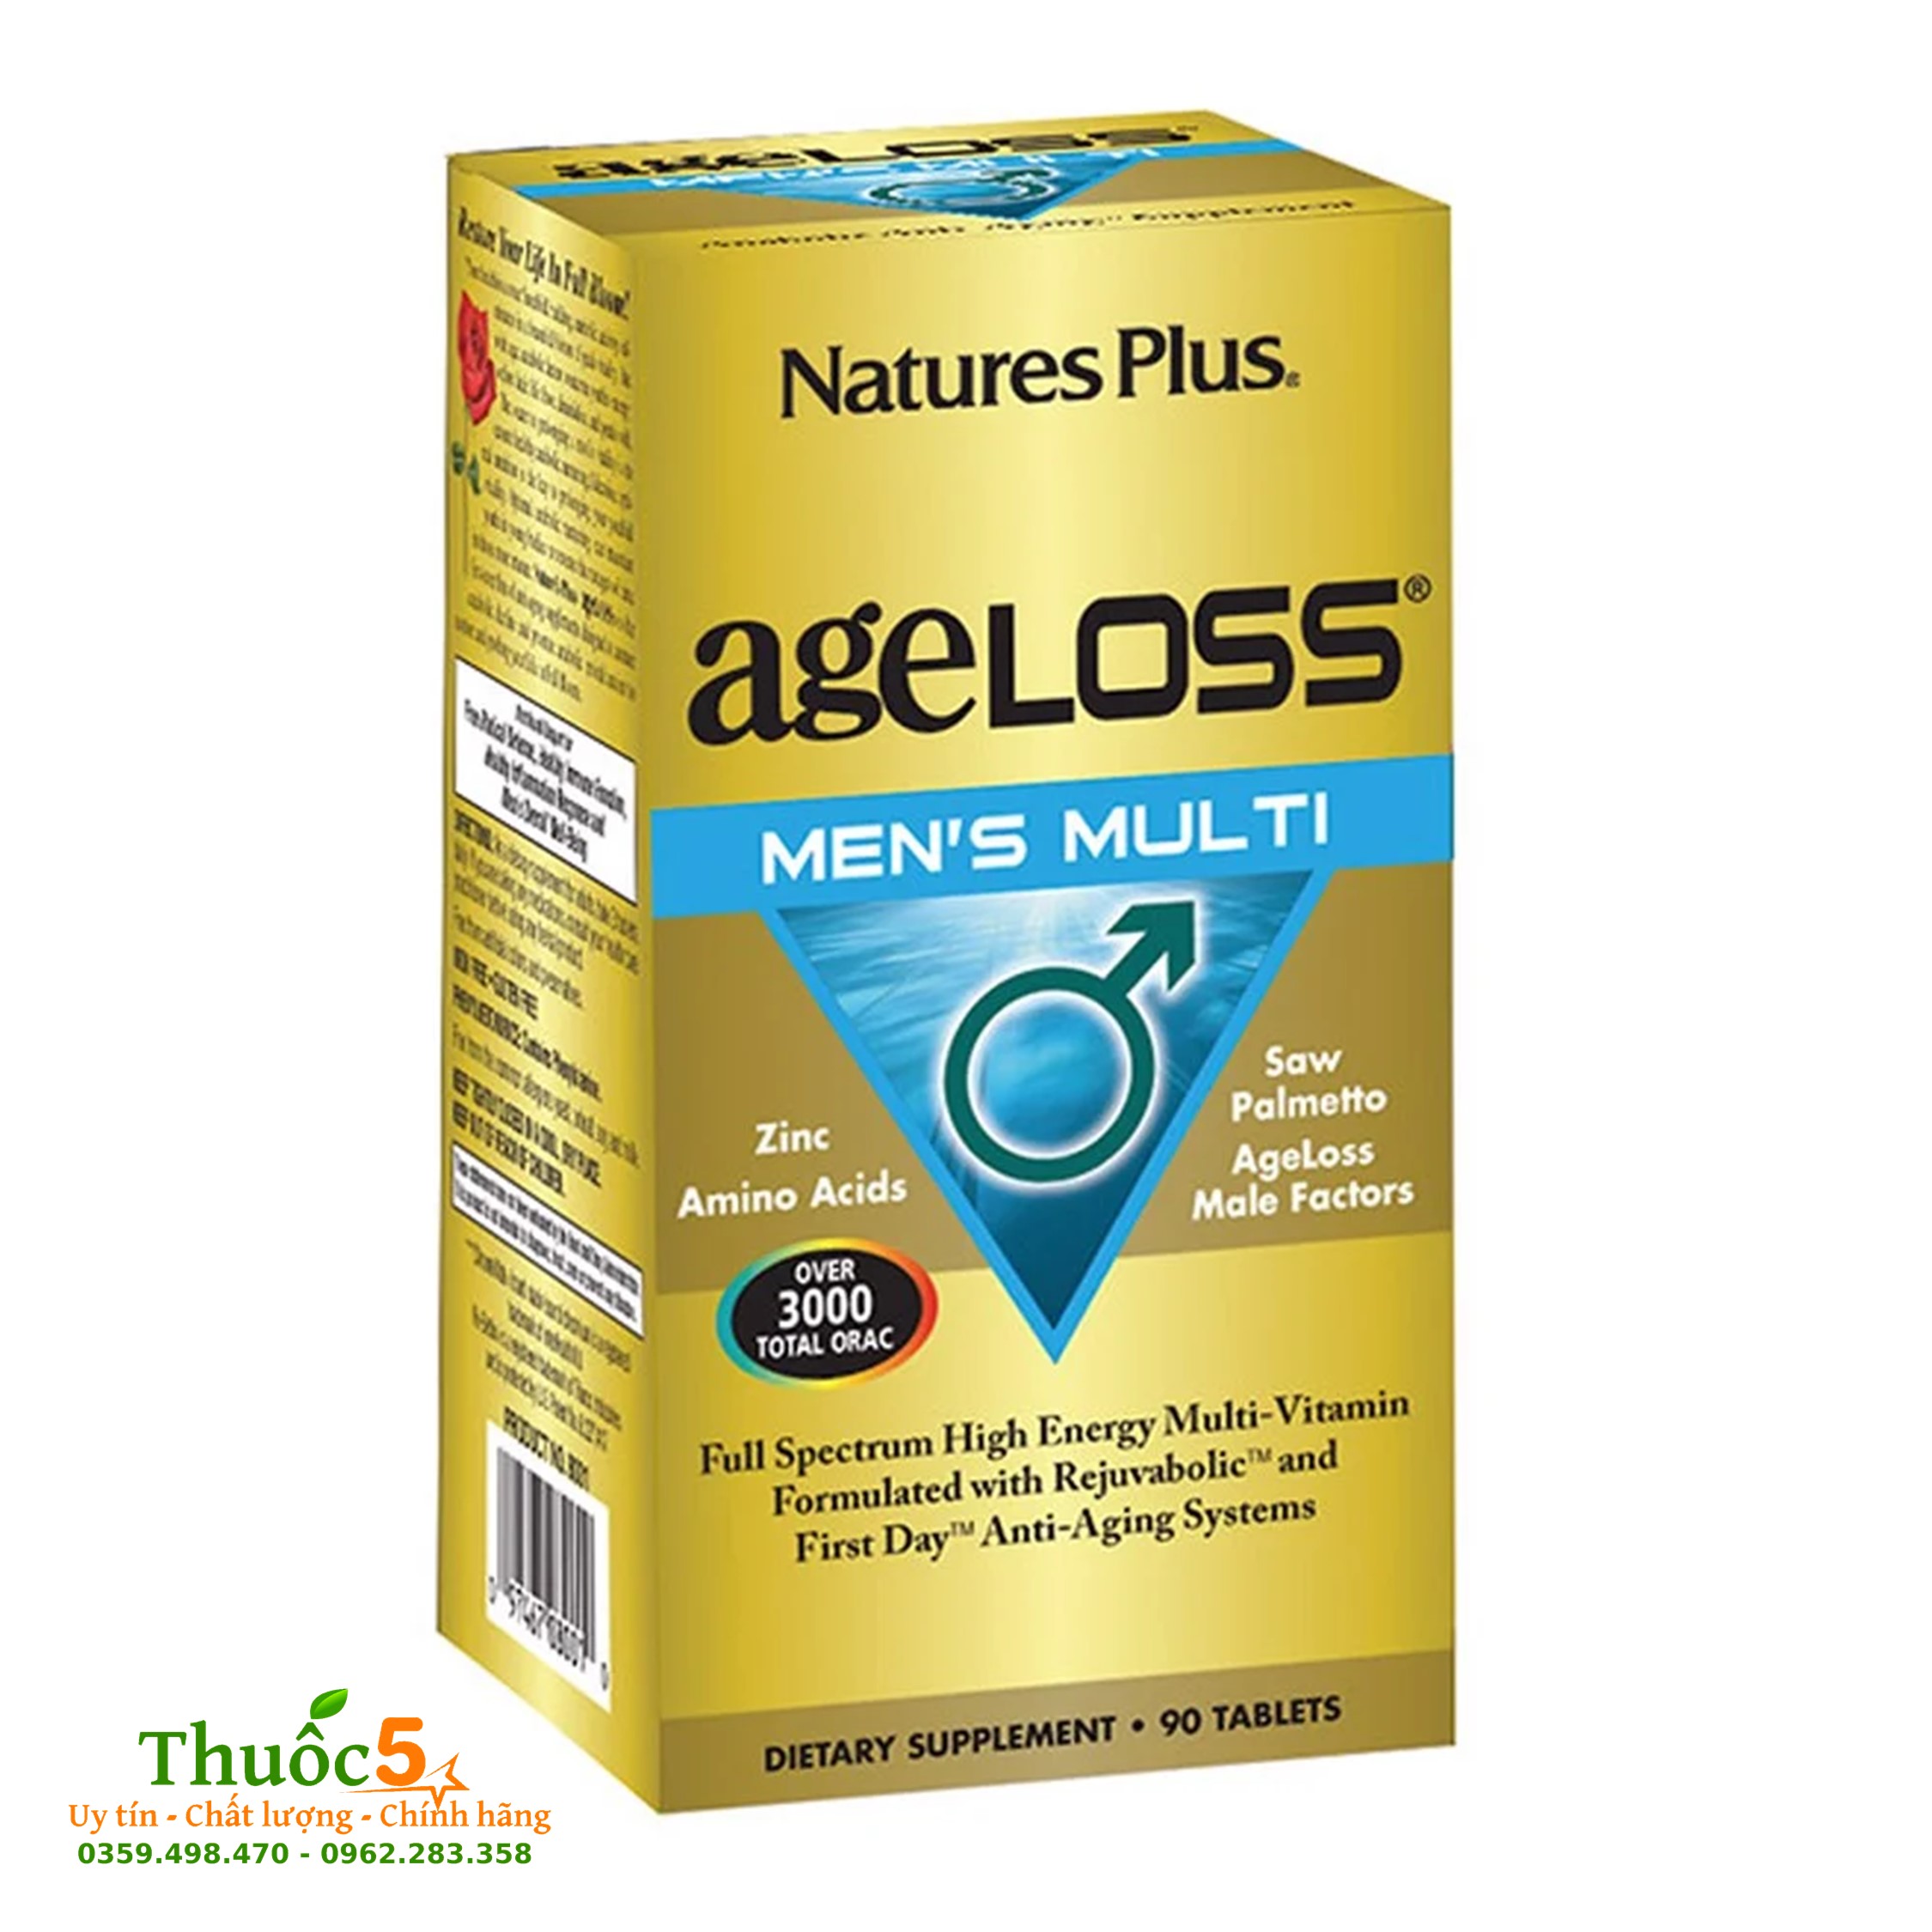 Ageloss Men’s Multi giúp phái mạnh tăng cường sức khỏe